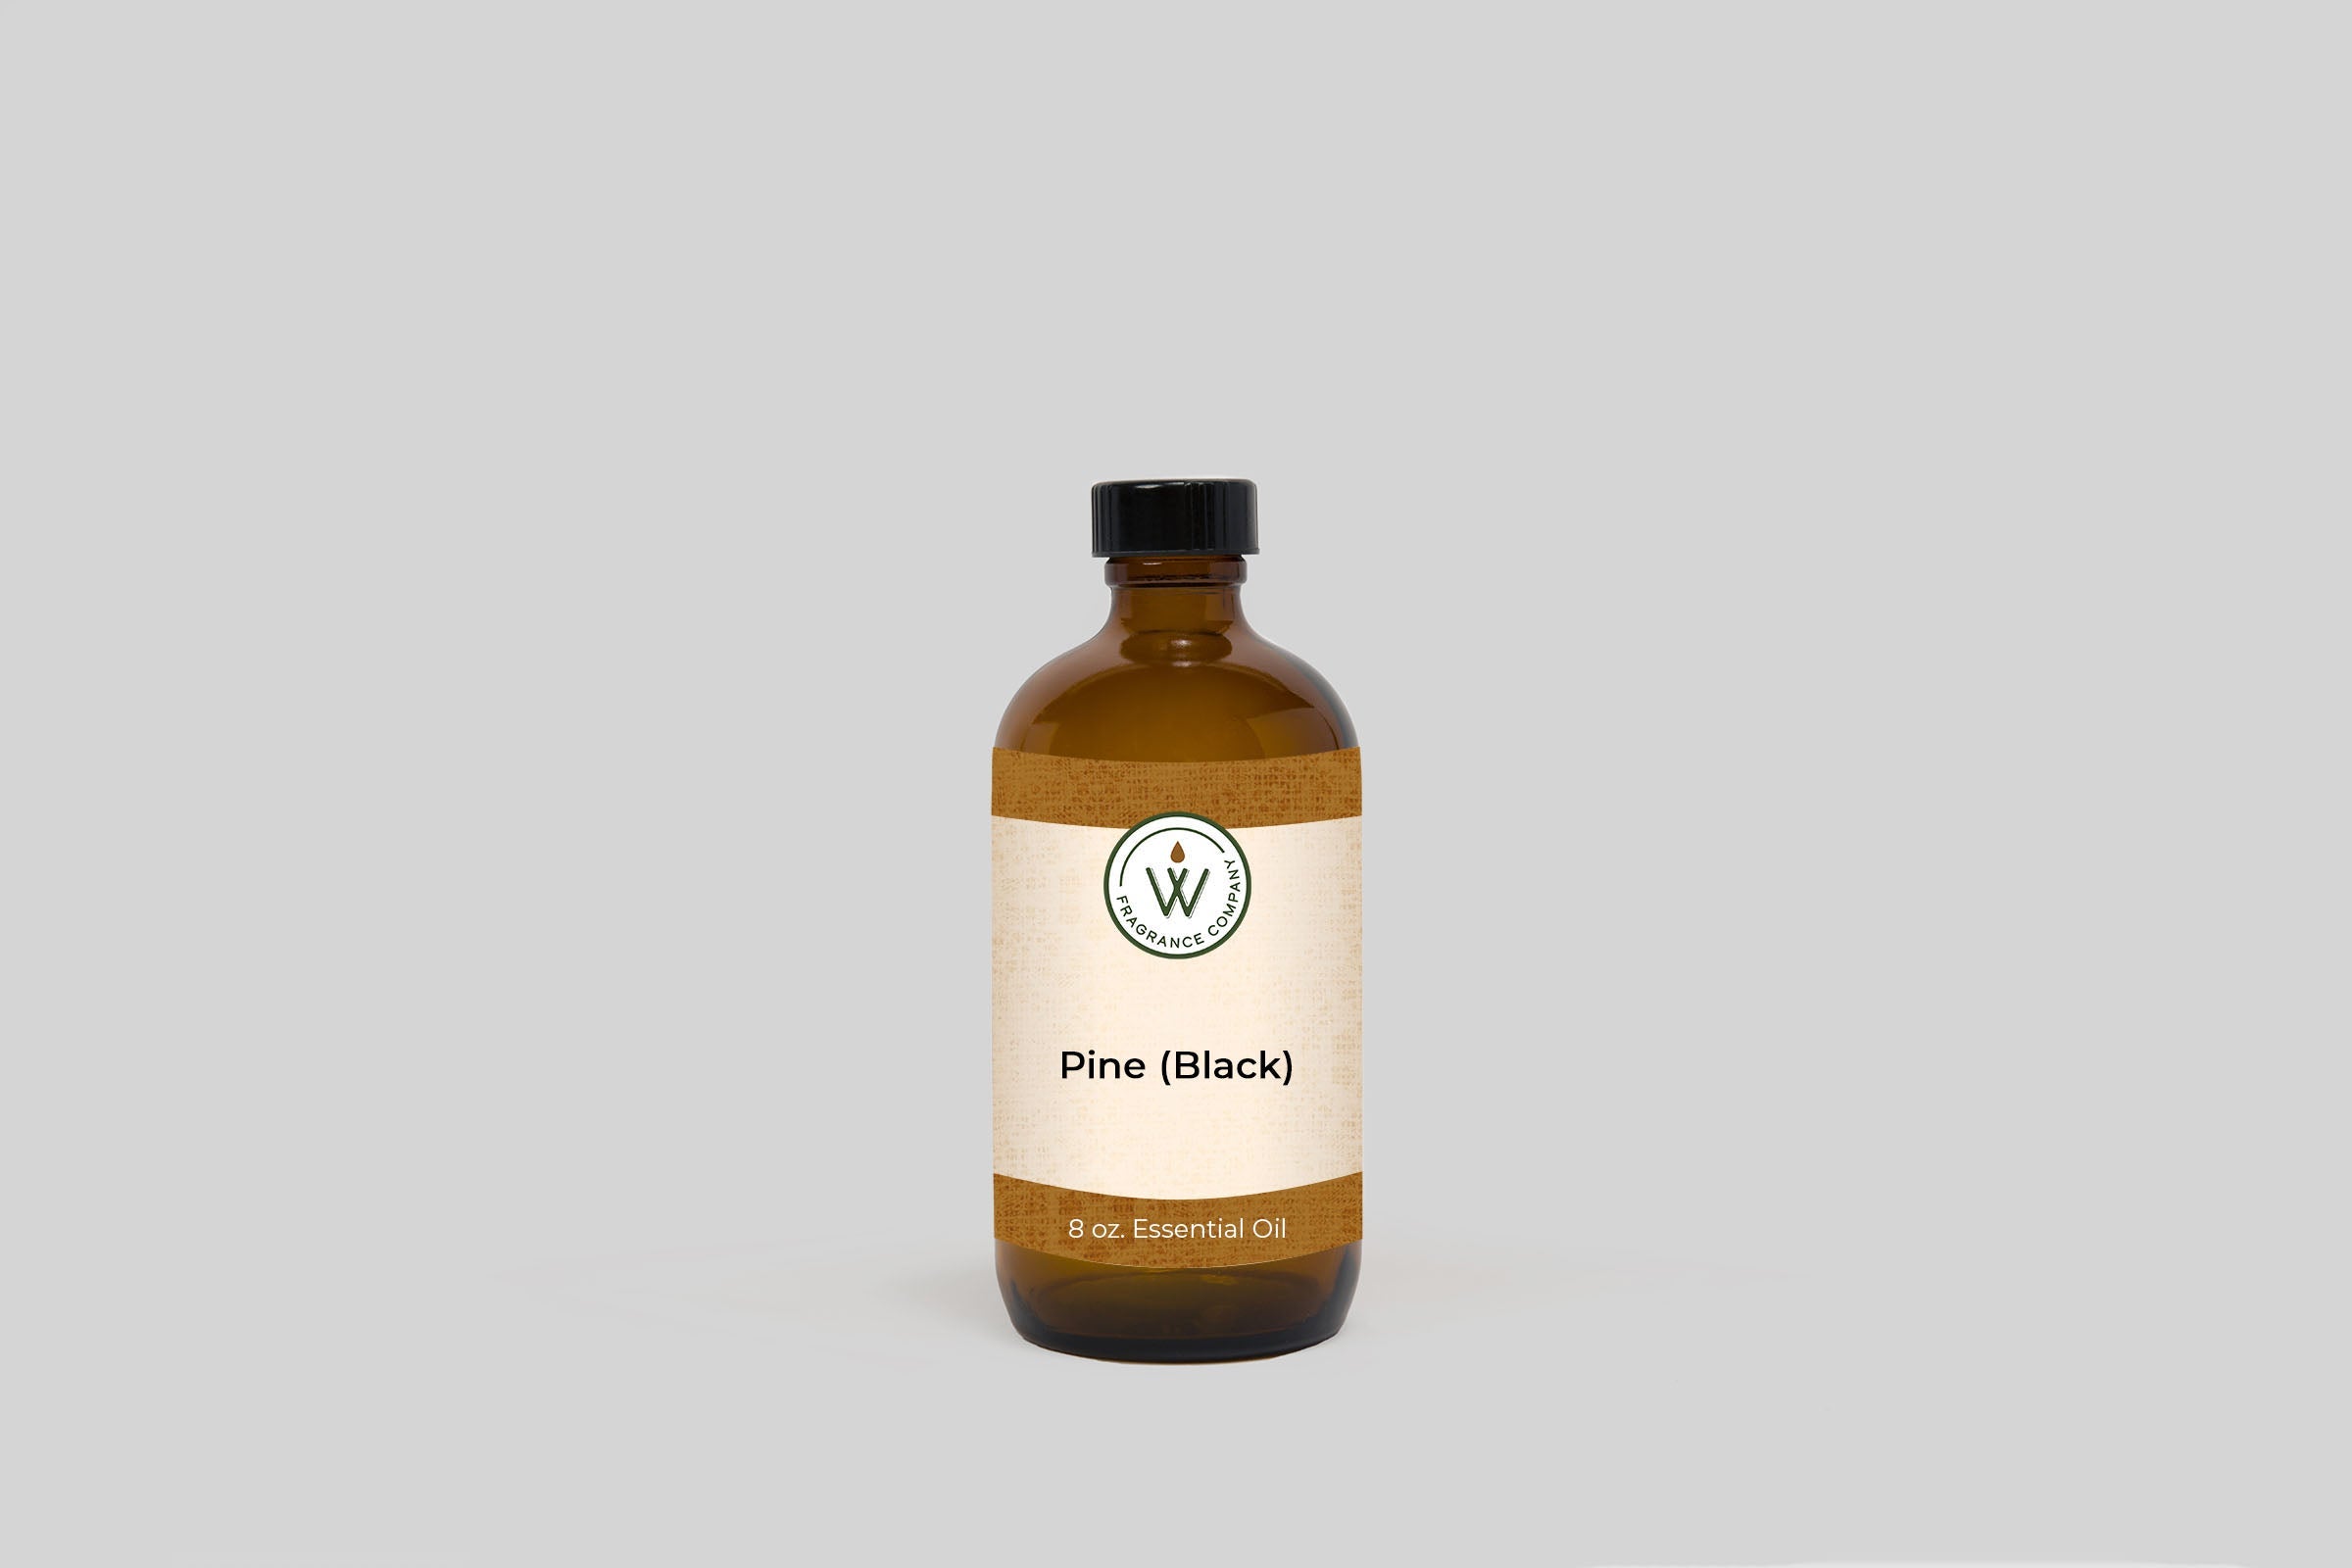 Pine (Black) Essential Oil